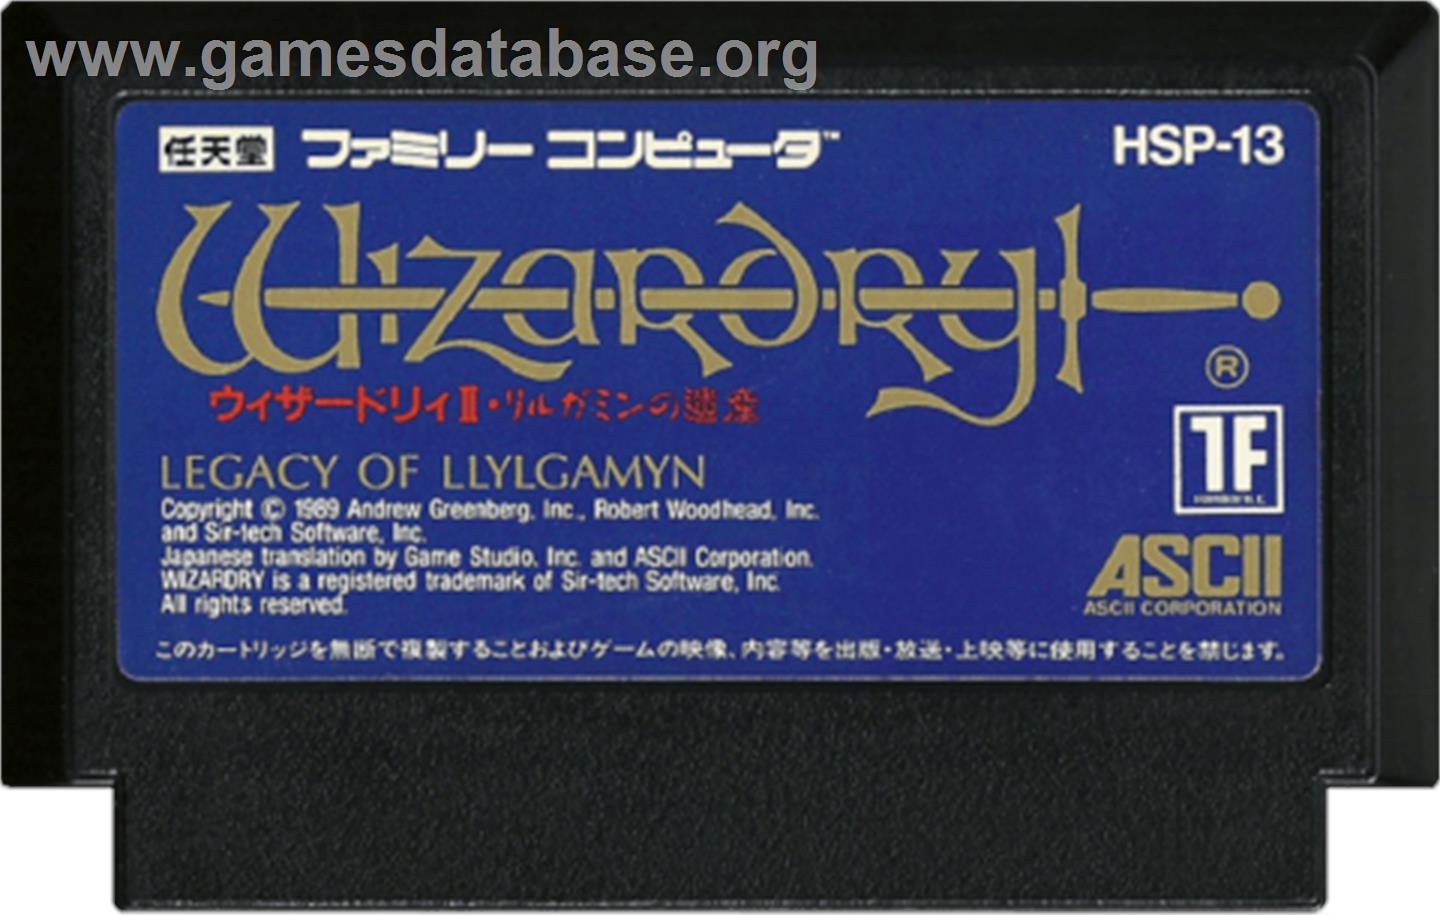 Wizardry II: Llylgamyn no Densetsu - Nintendo NES - Artwork - Cartridge